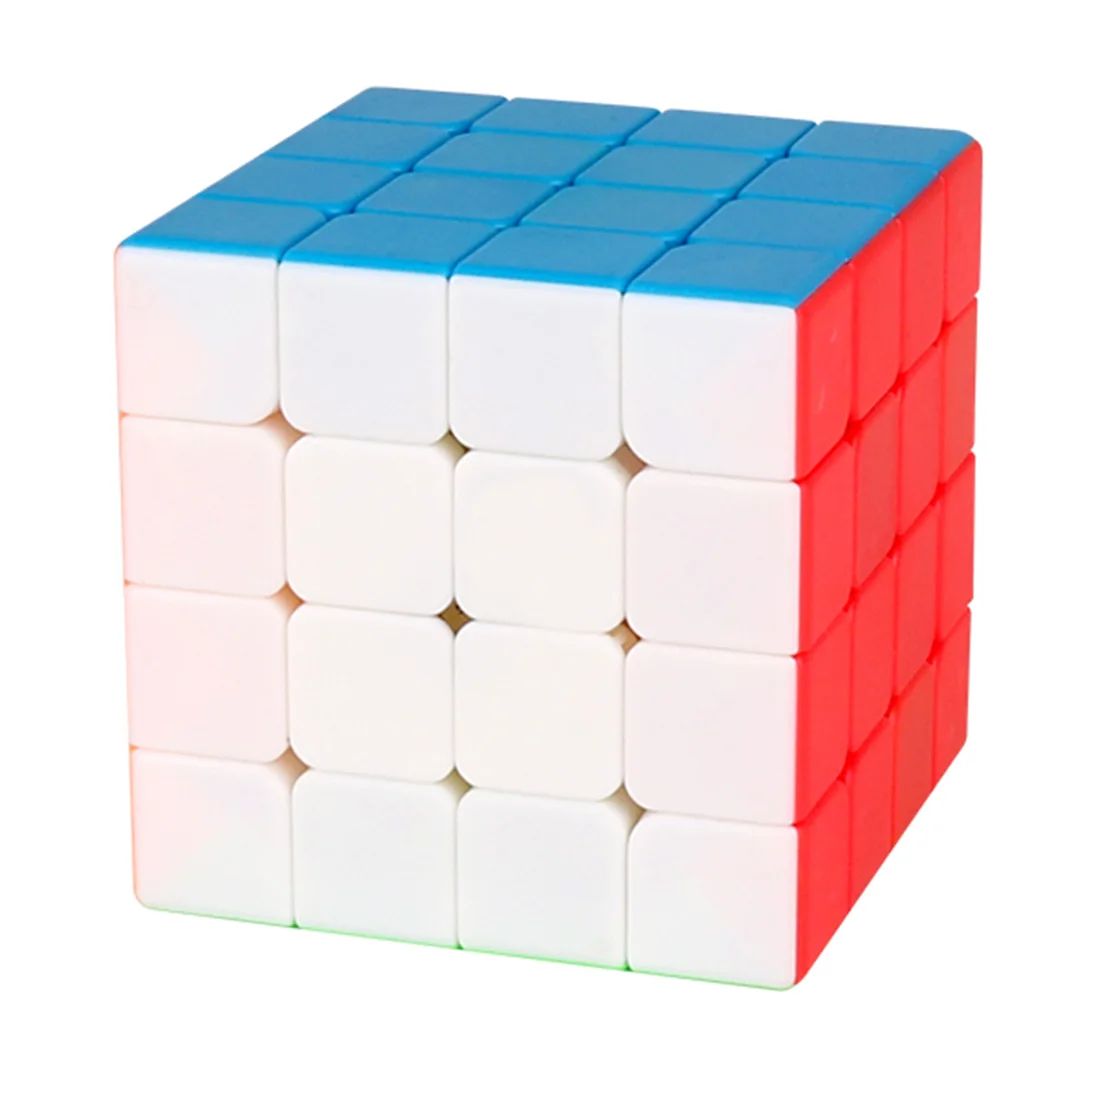 Новый MeiLong4 MF8826 4X4 волшебный куб головоломка игра головоломка кубики дети раннего образования игрушка для детей новый куб 2019-красочный